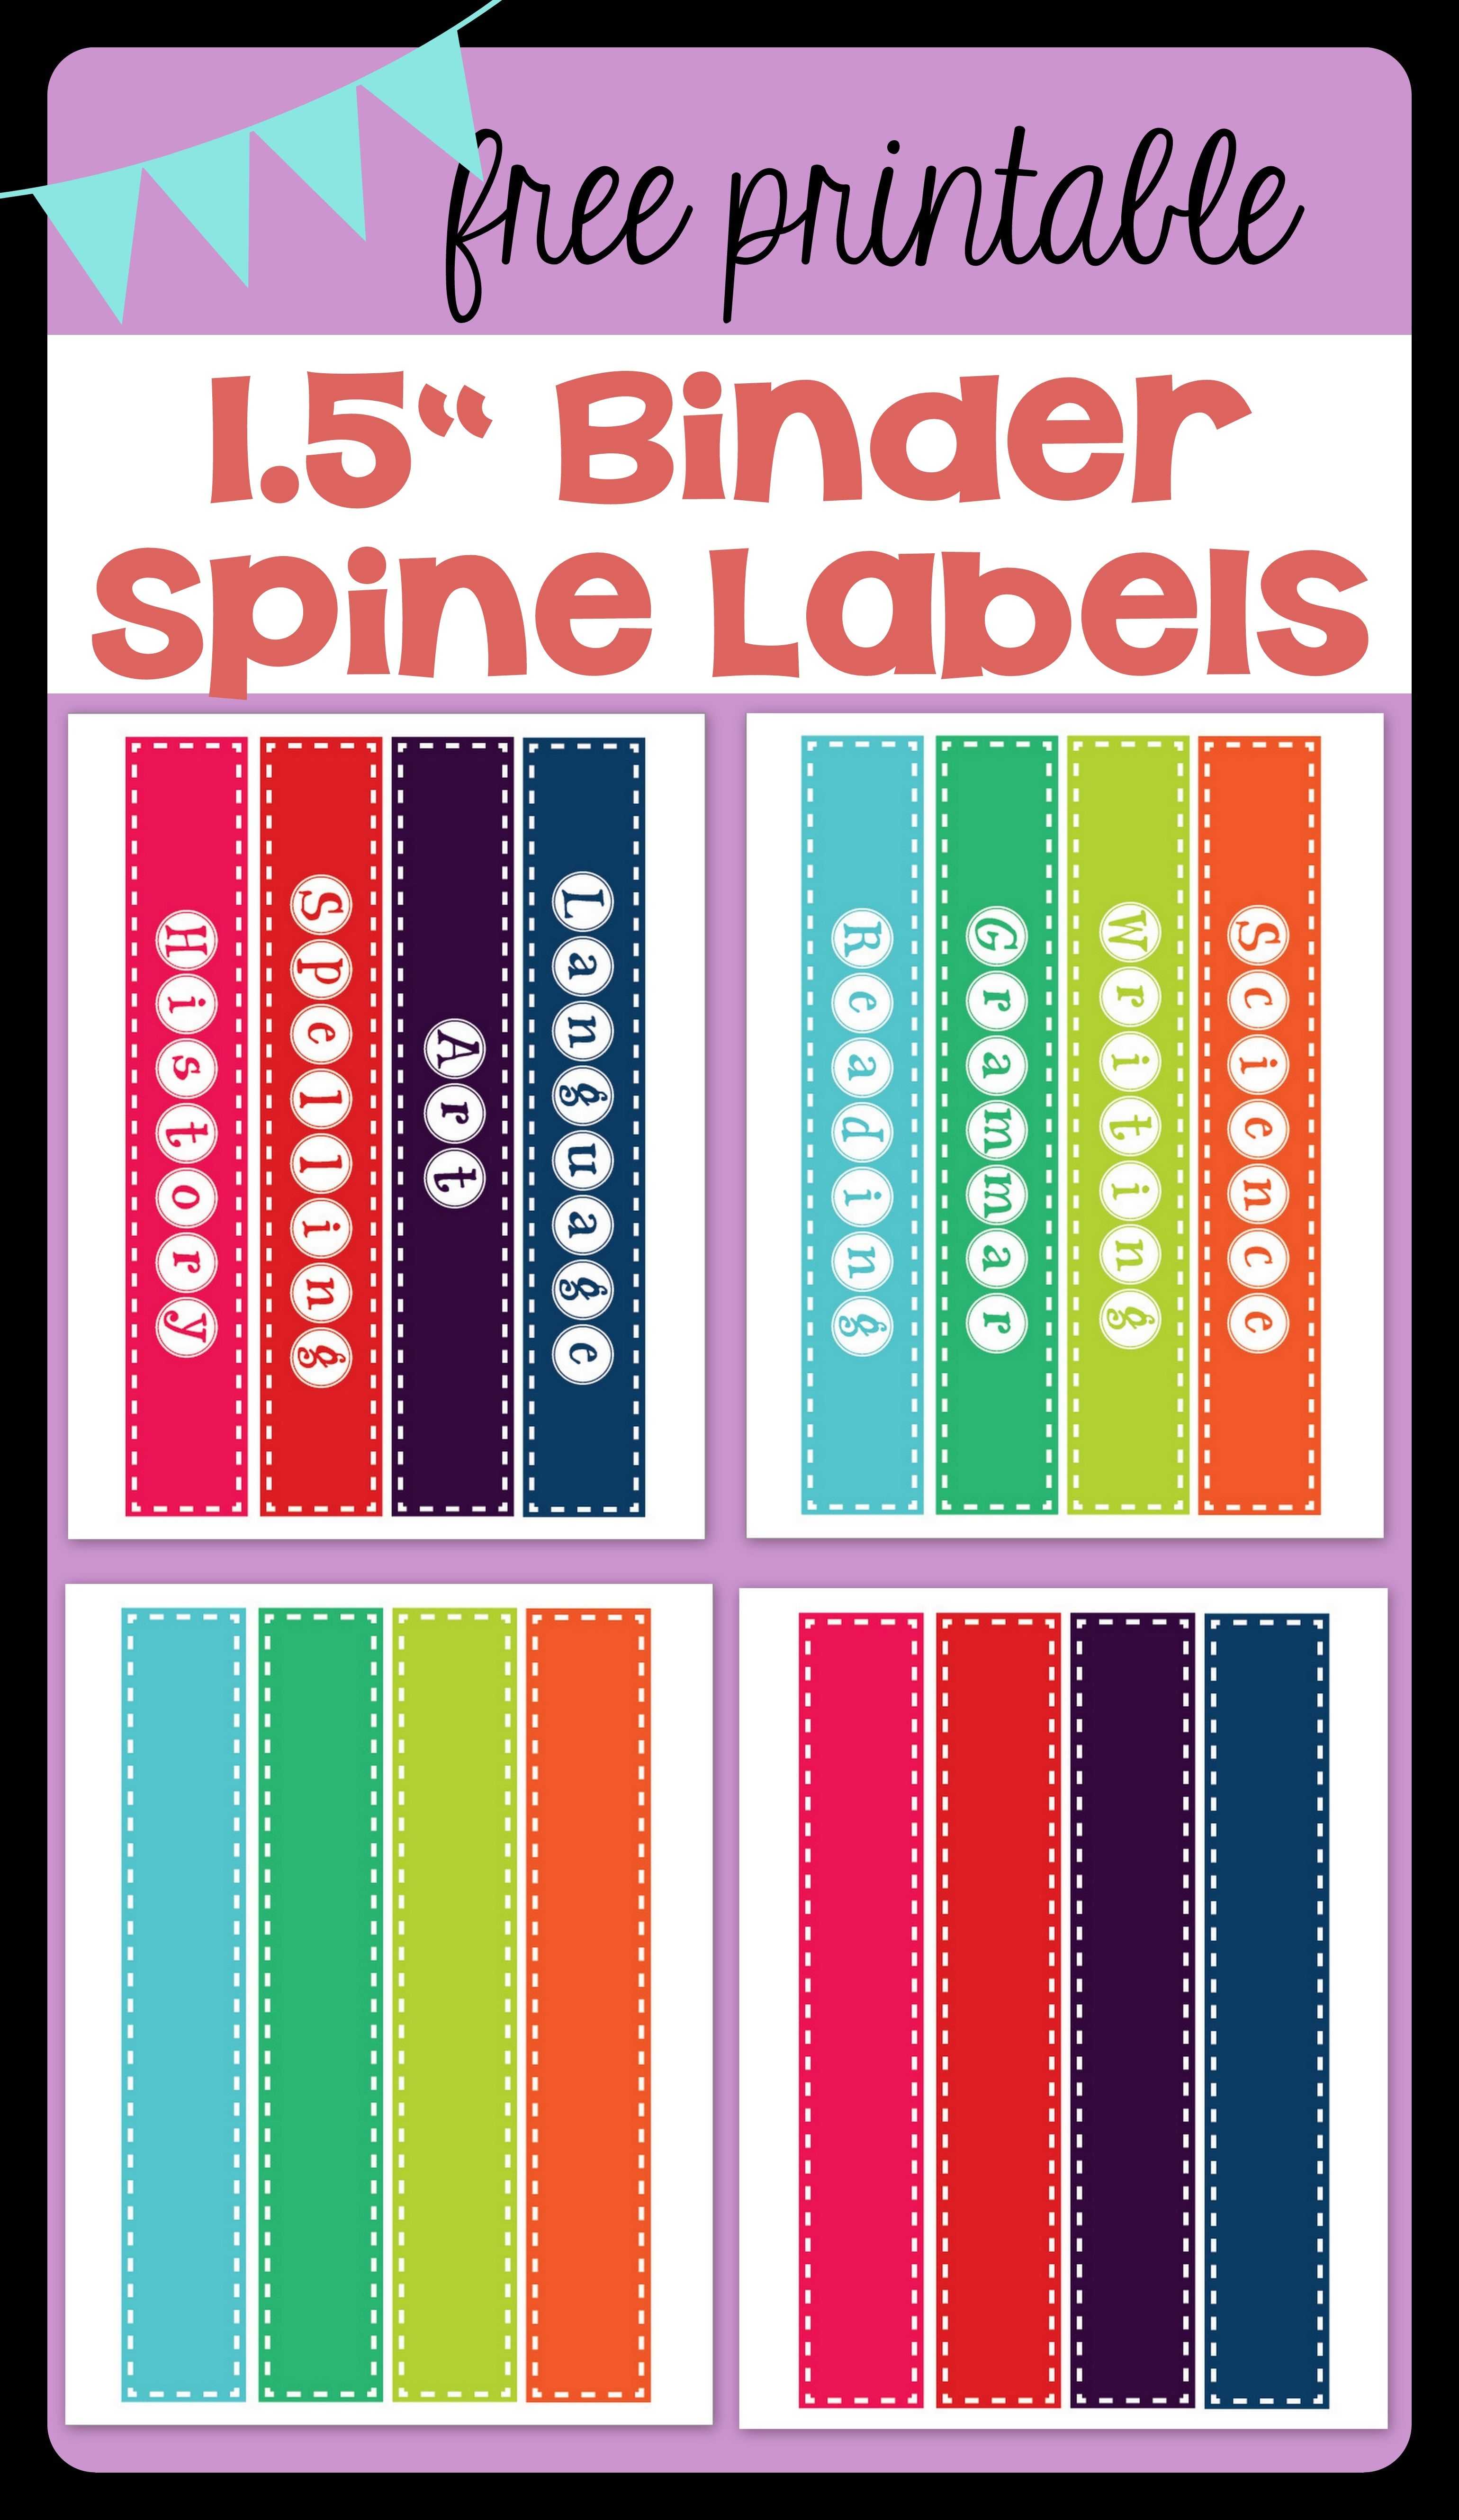 Free Printable 1.5" Binder Spine Labels For Basic School For Binder Spine Template Word